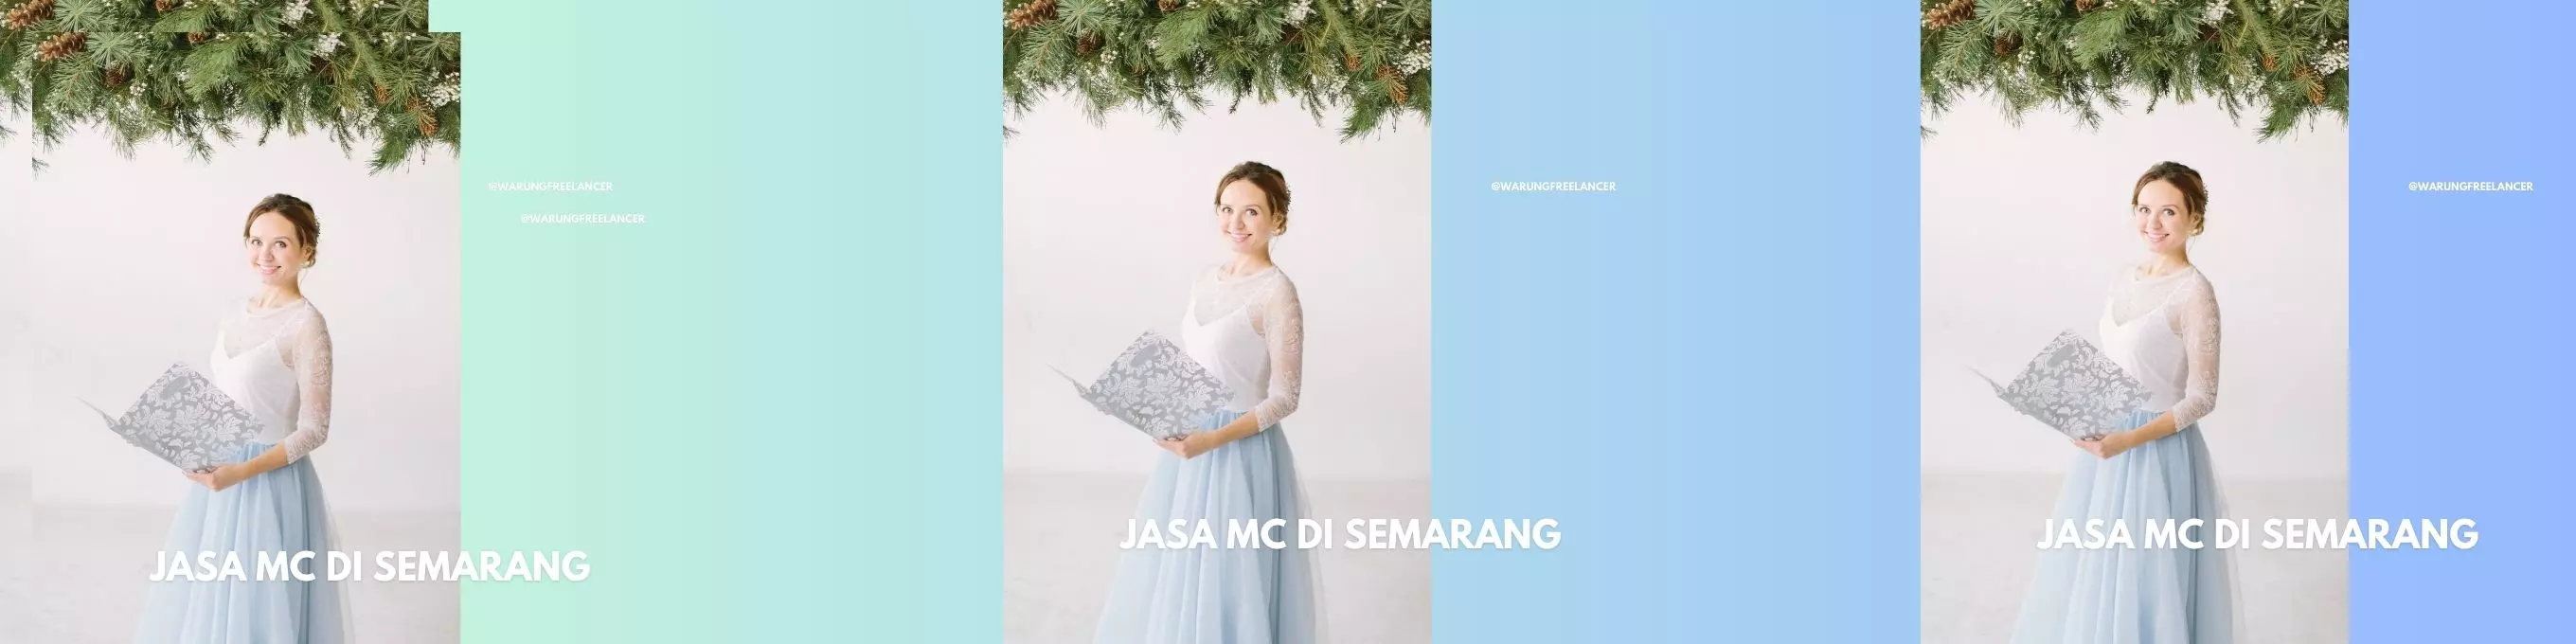 Jasa MC Di Semarang